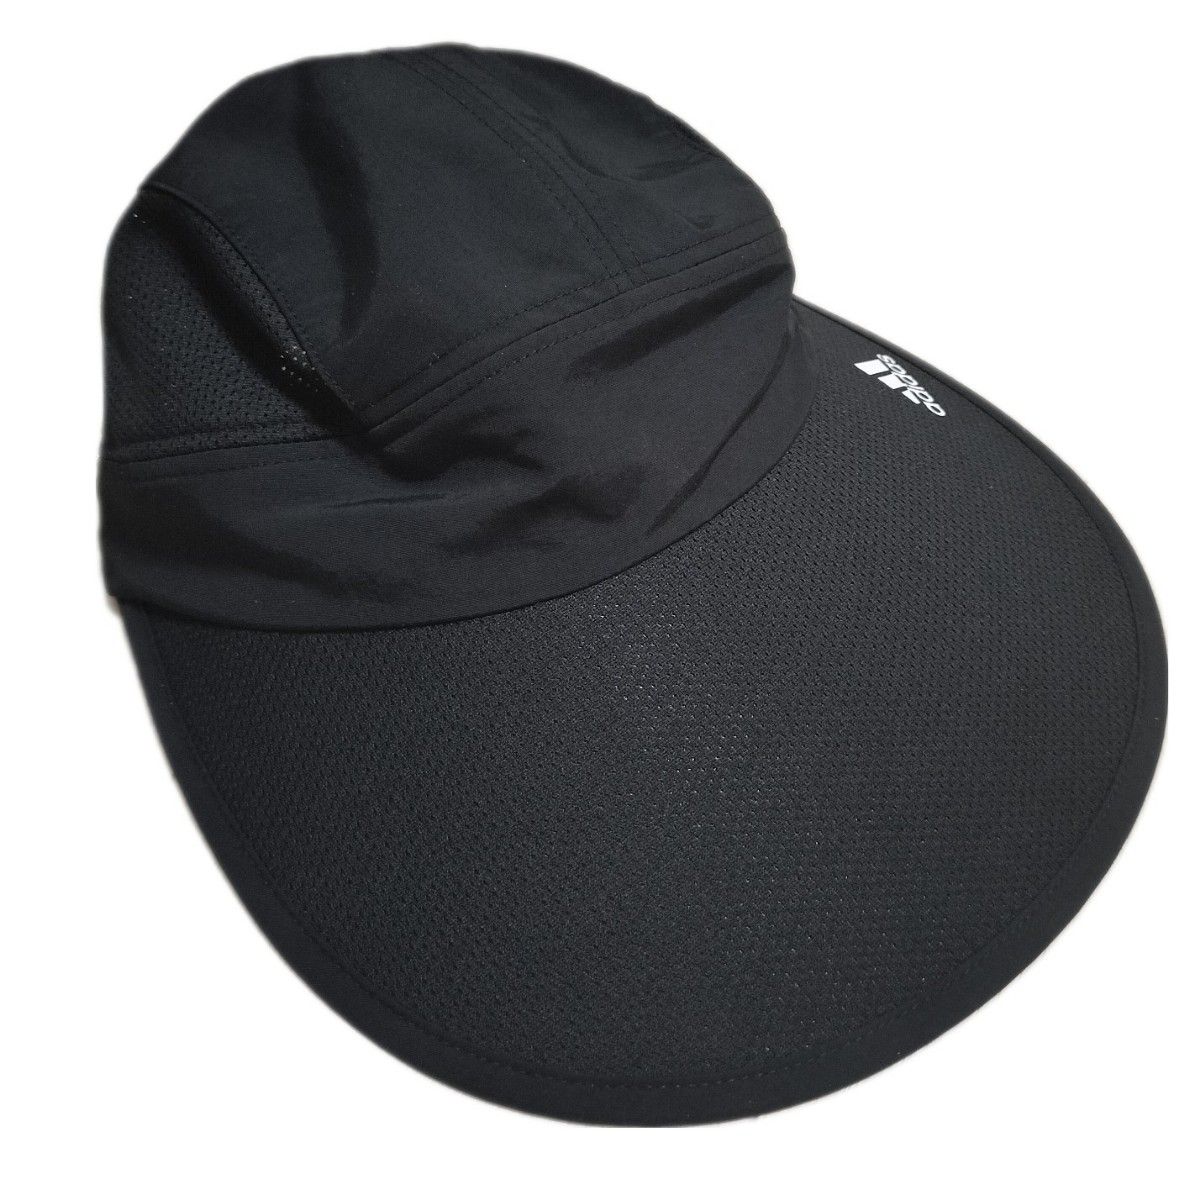 アディダス レディース ワイドバイザー サンバイザー メッシュ 帽子 キャップ ブラック adidas 紫外線対策 UV対策 夏